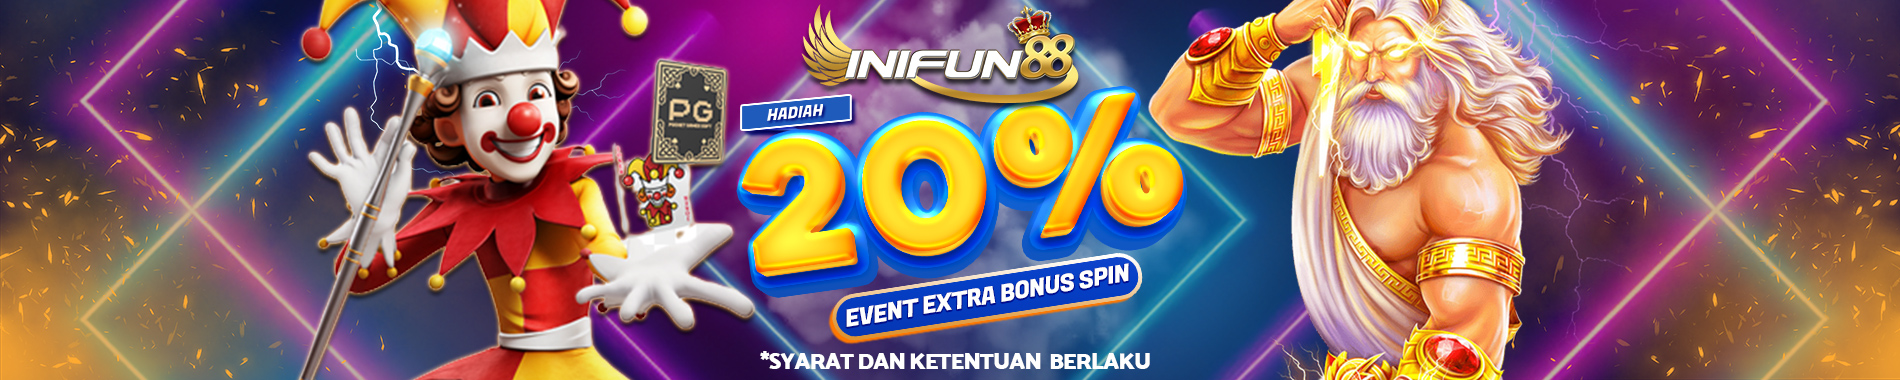 iniFun88 Event Extra Bonus Spin